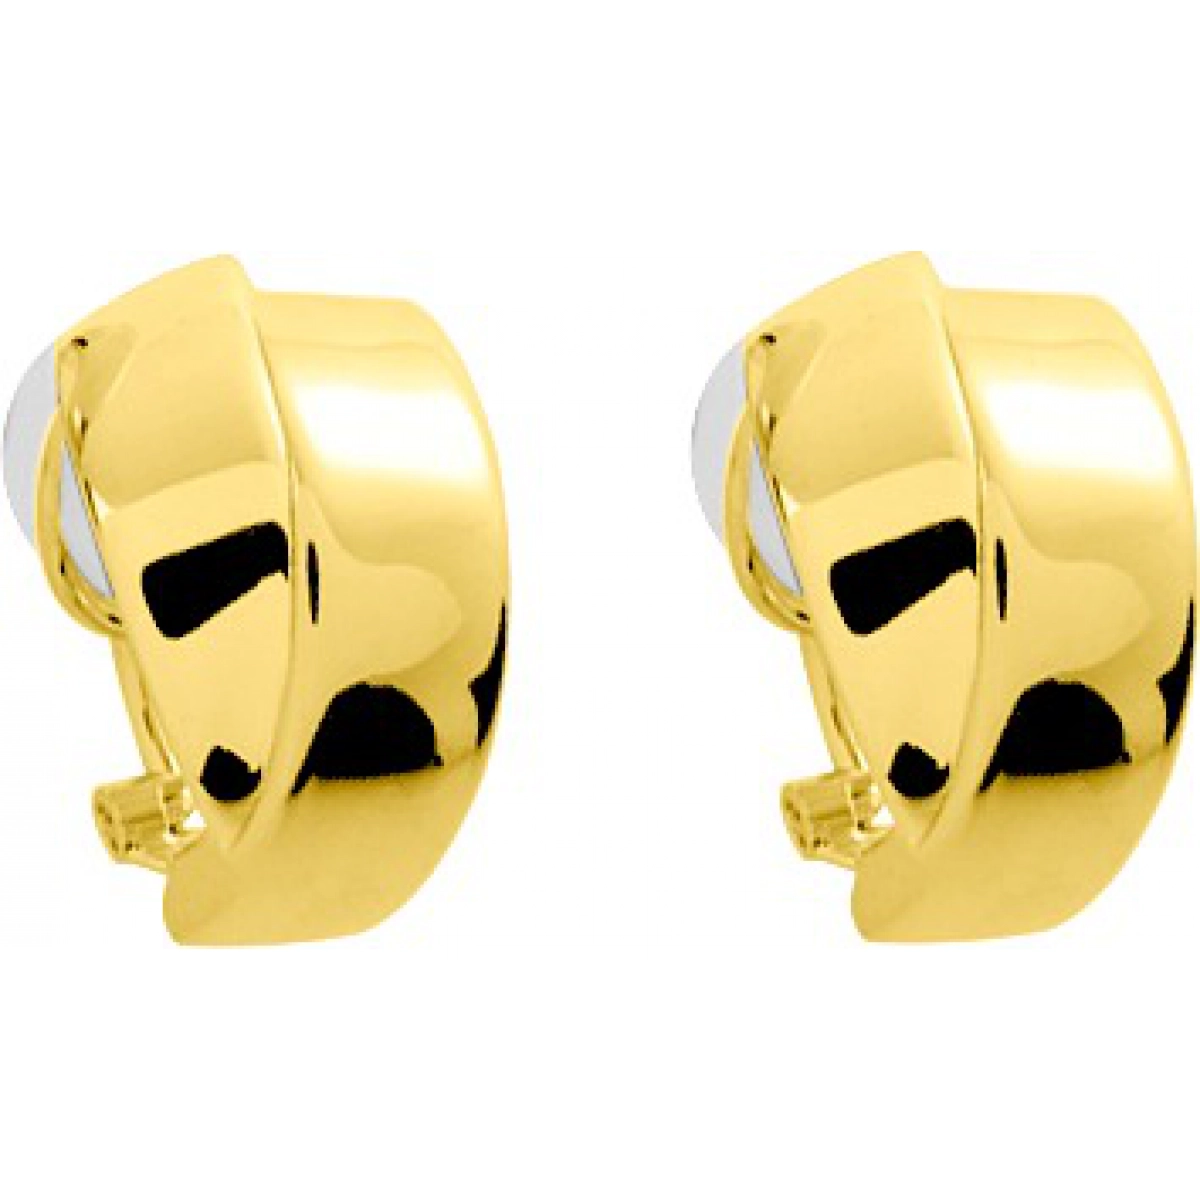 Earrings pair electroformed 18K YG  Lua Blanca  9531.0